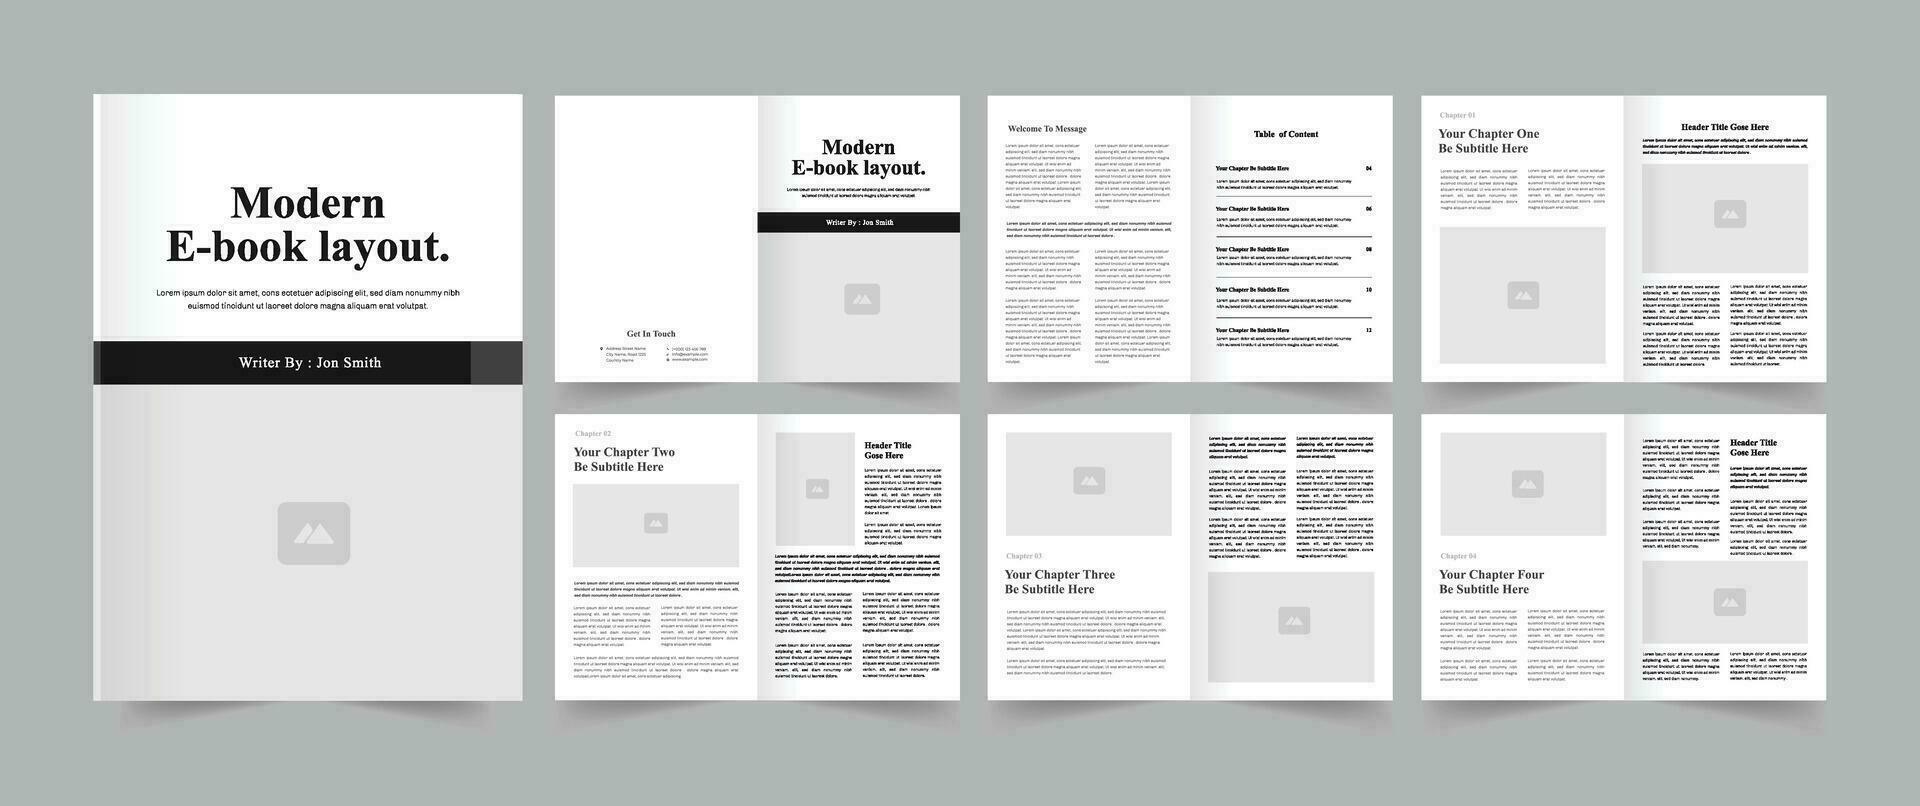 moderno libro electronico diseño modelo vector